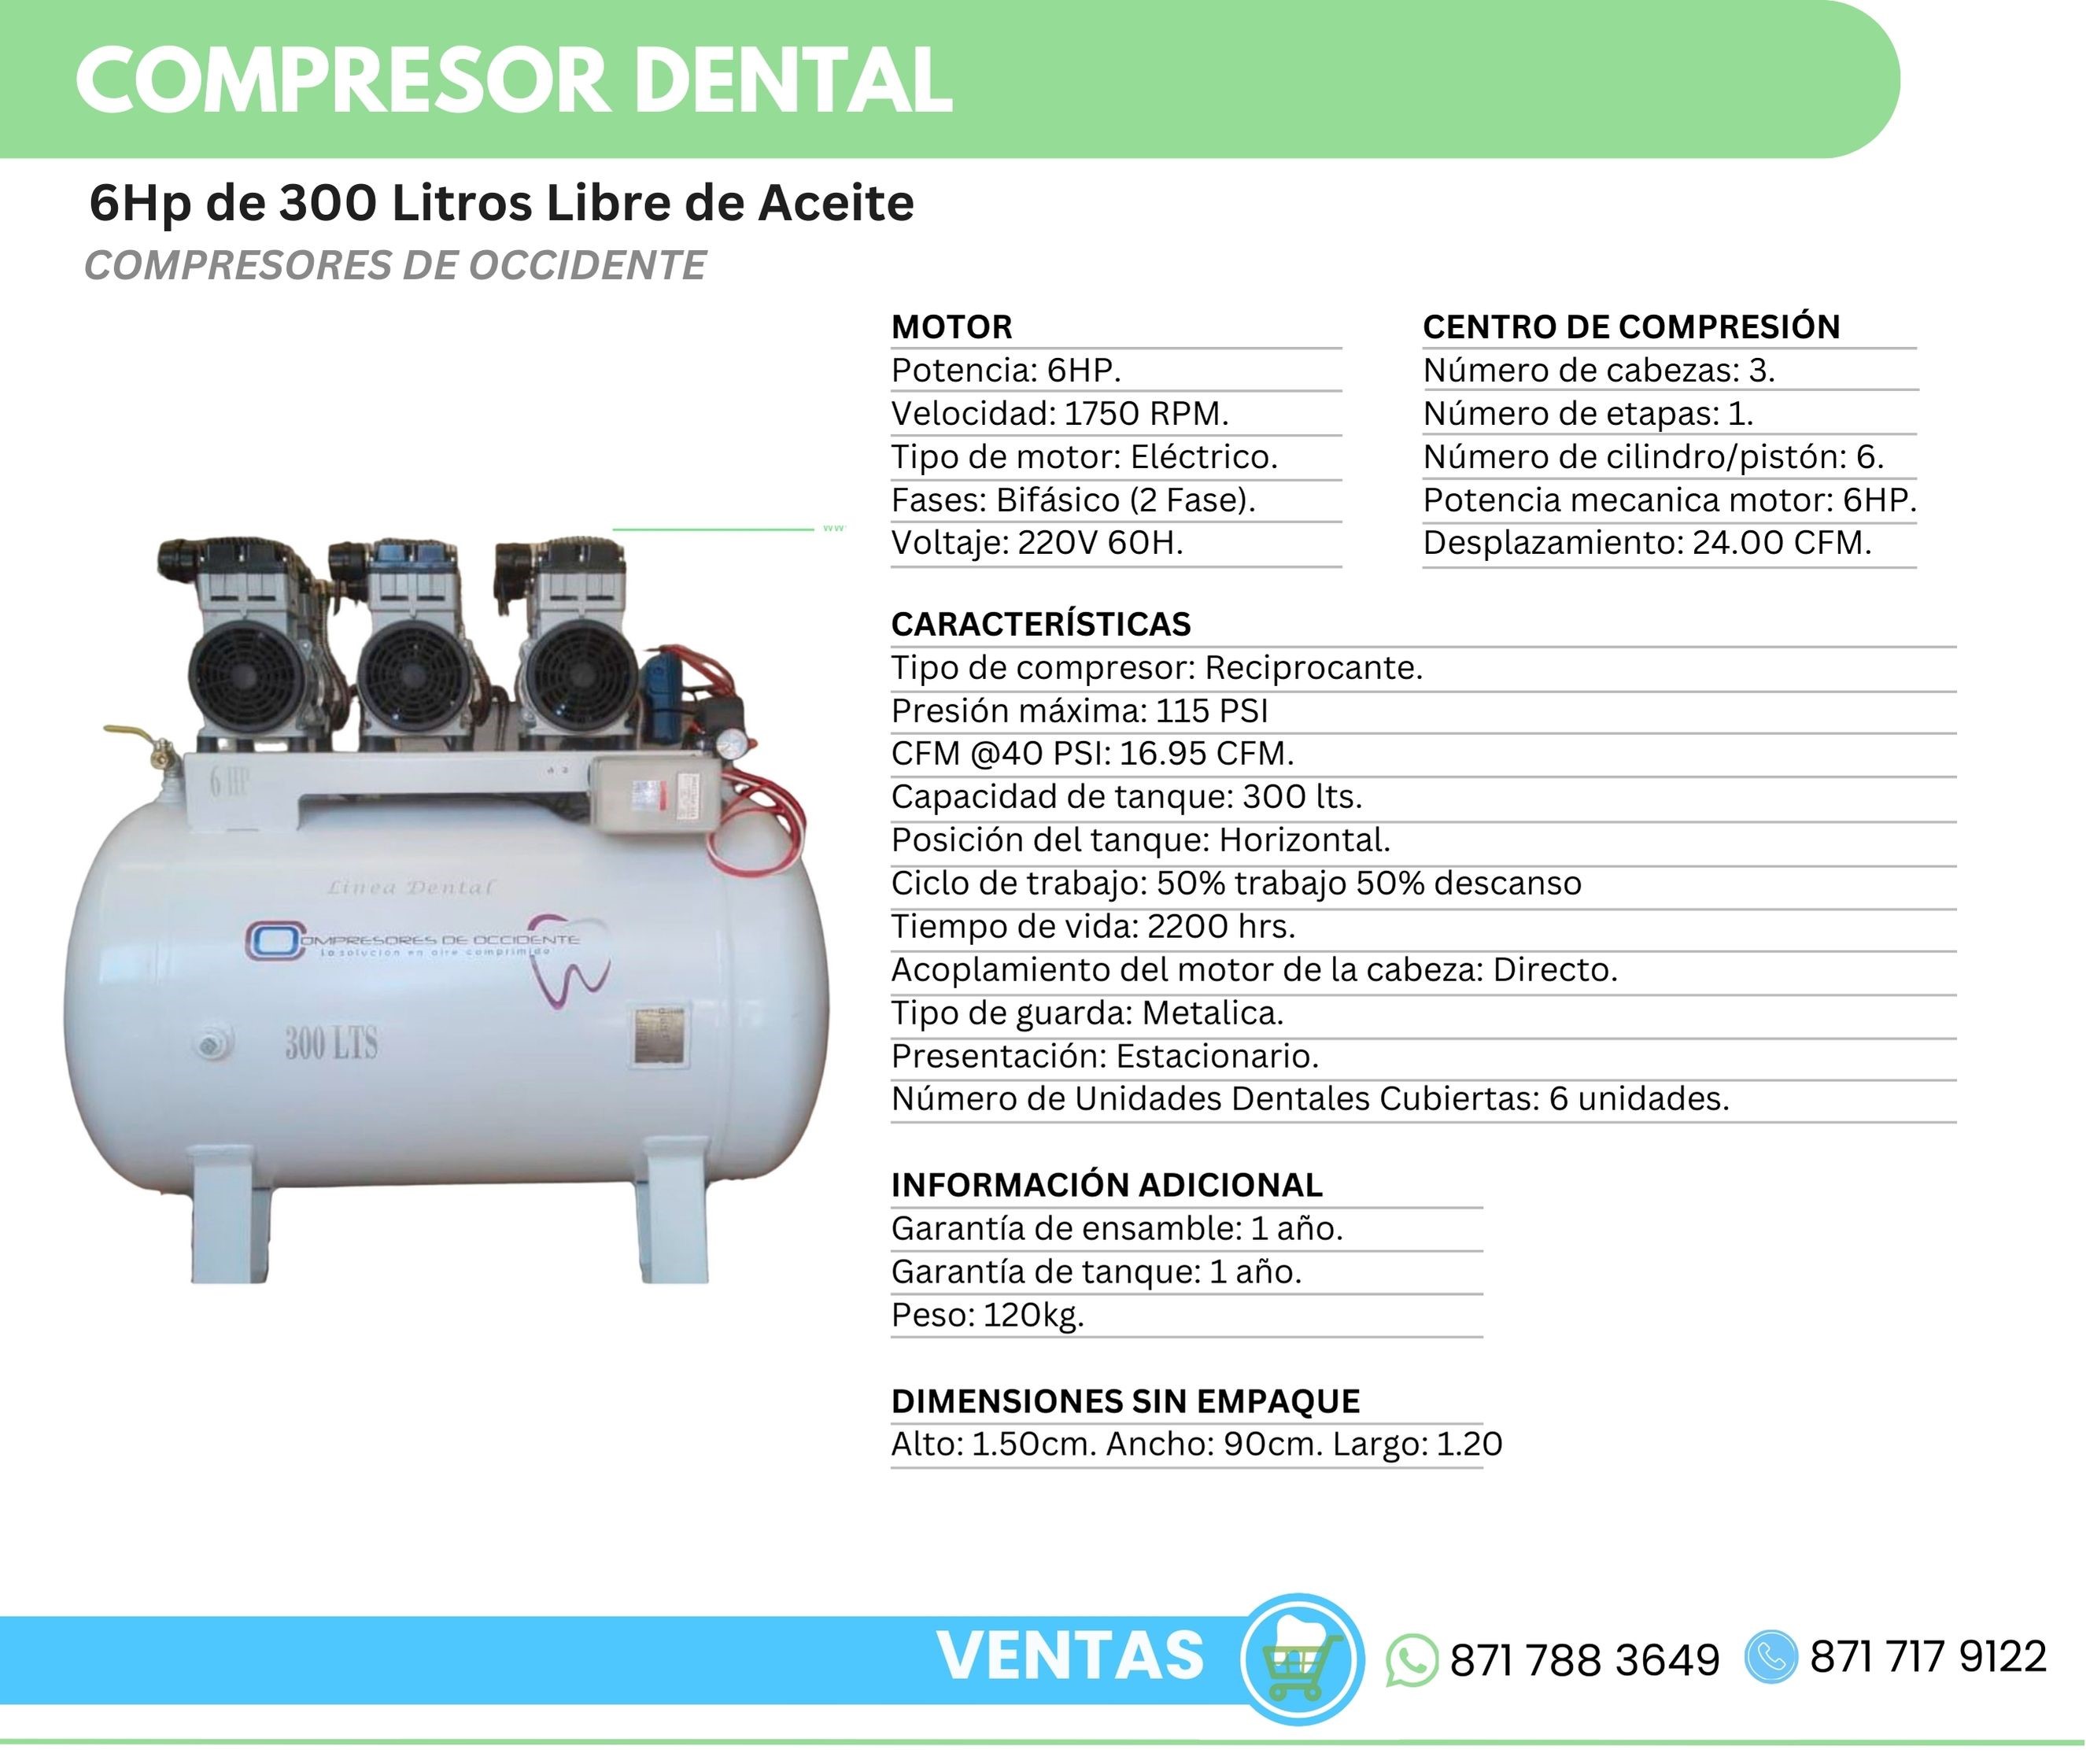 Compresor Dental 6Hp 300 Litros Libre de Aceite Compresores de Occidente Orthosign